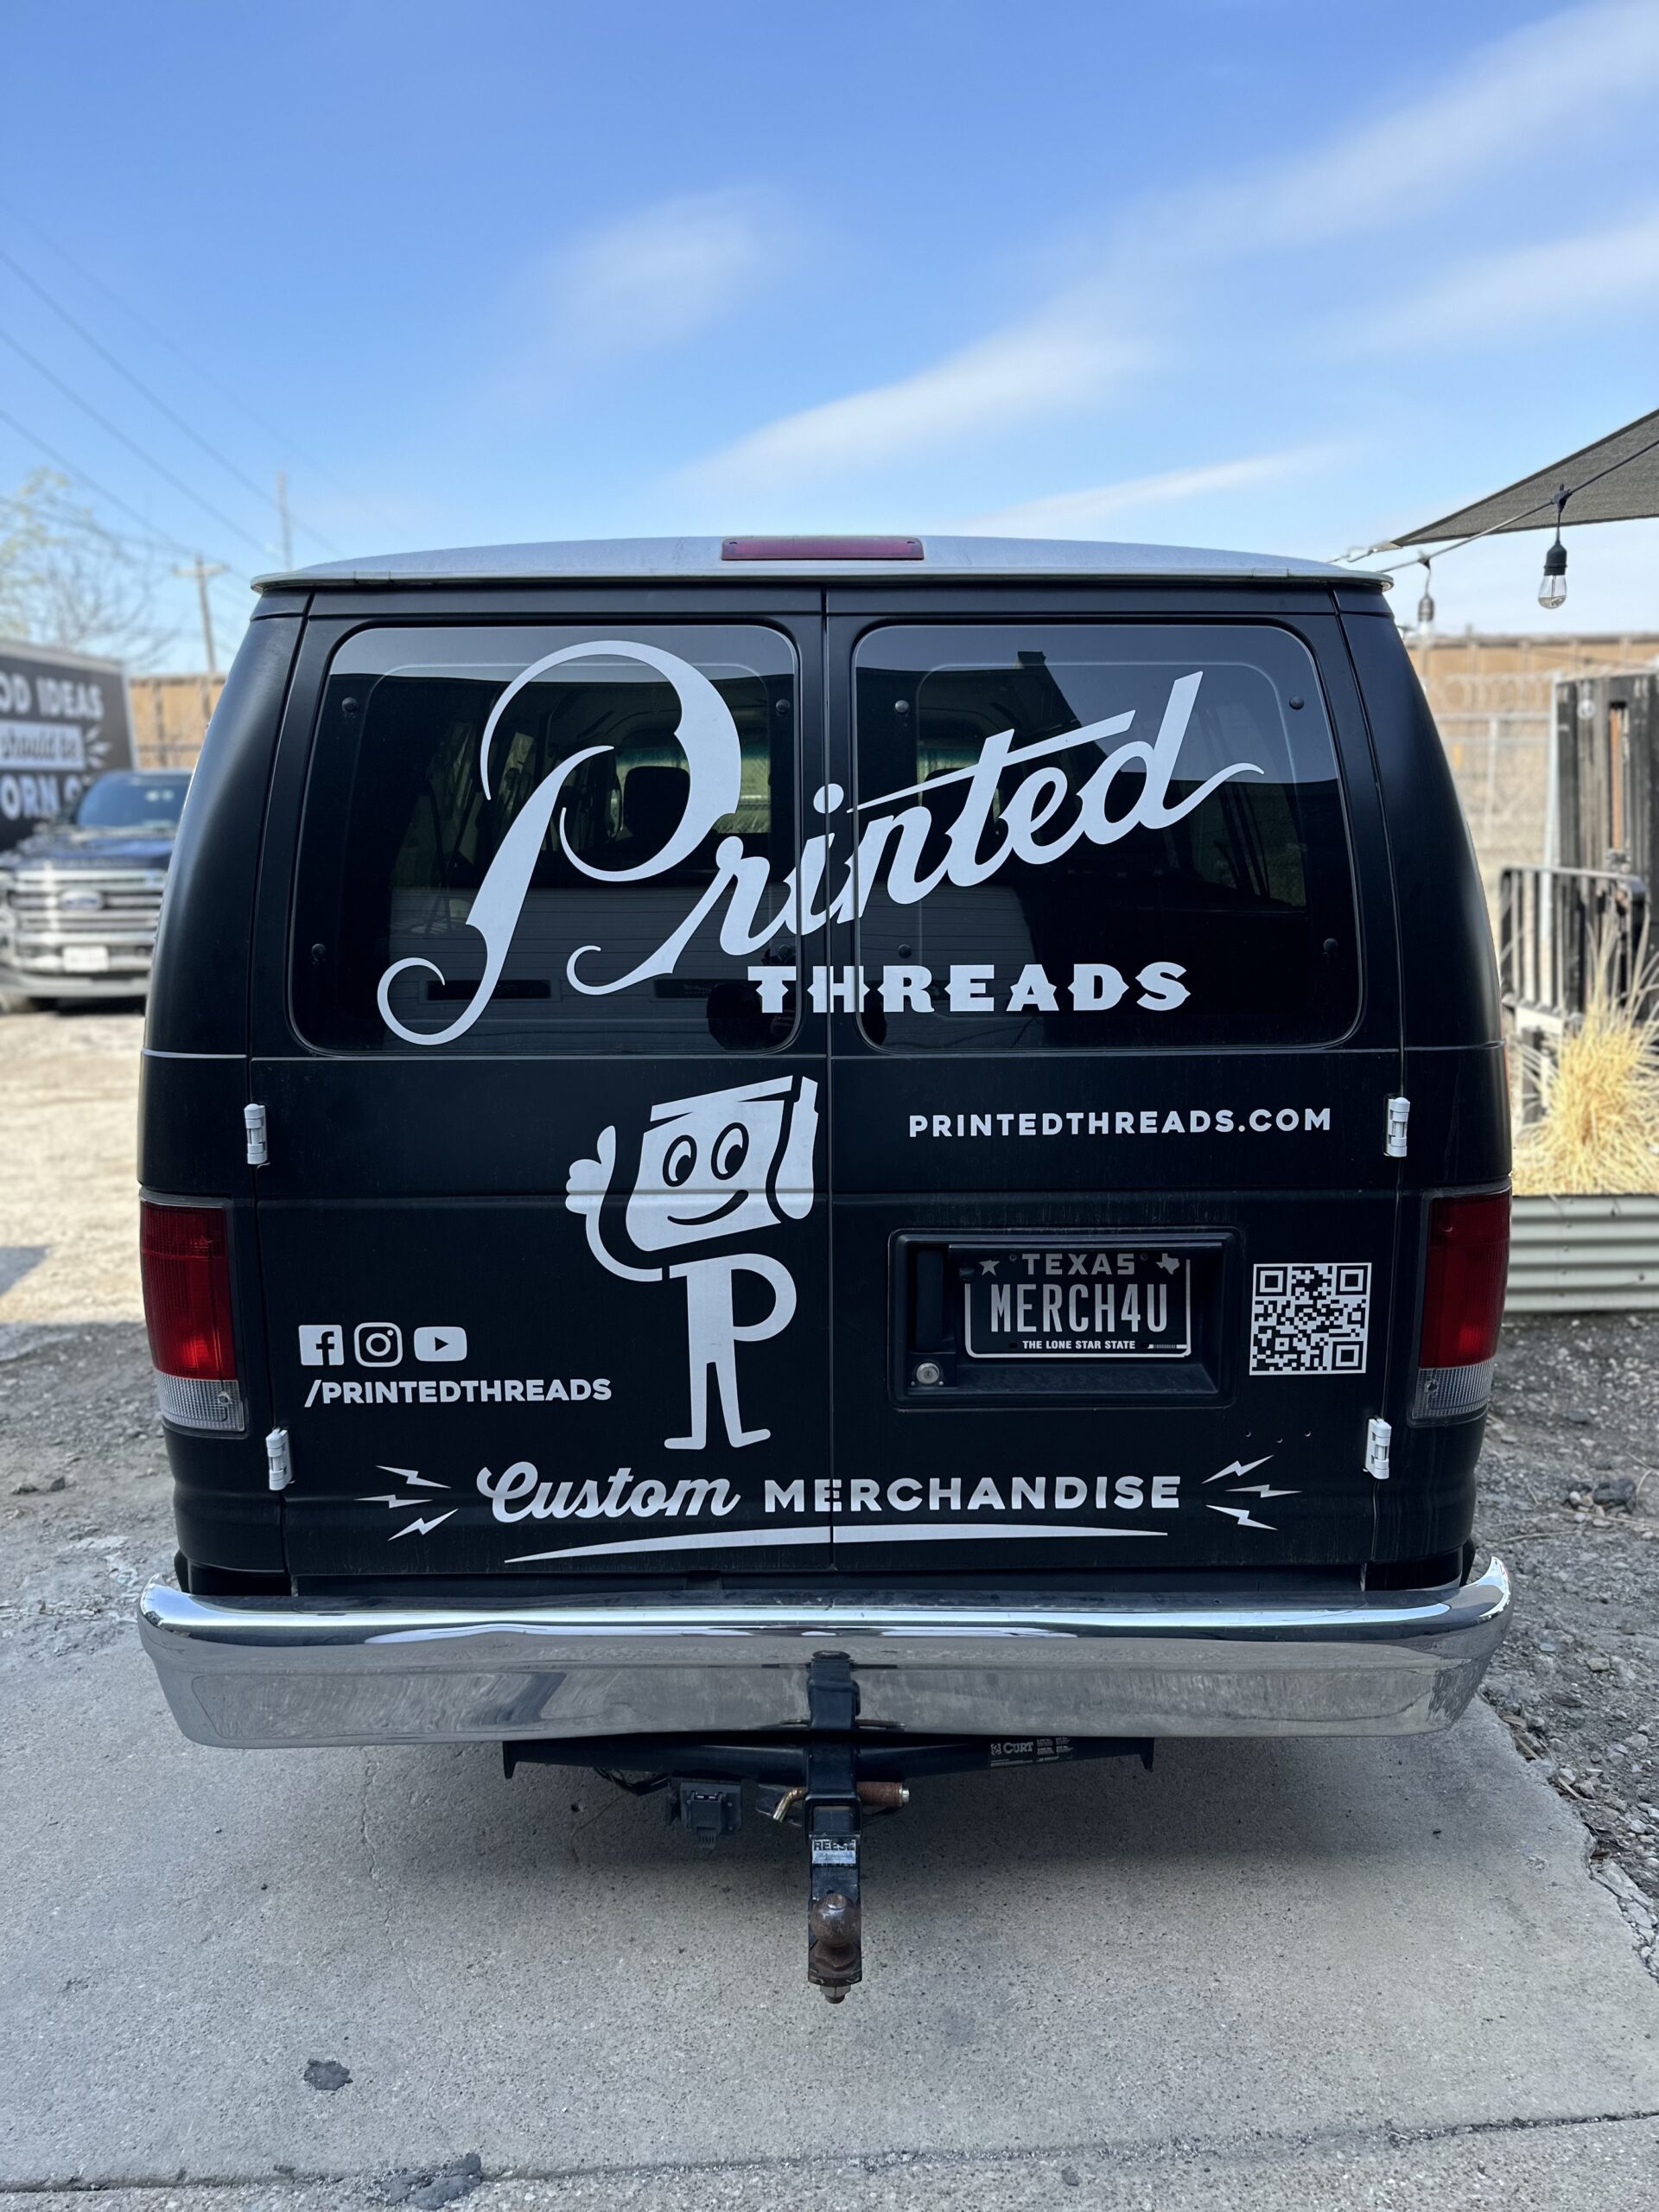 Printed Threads van